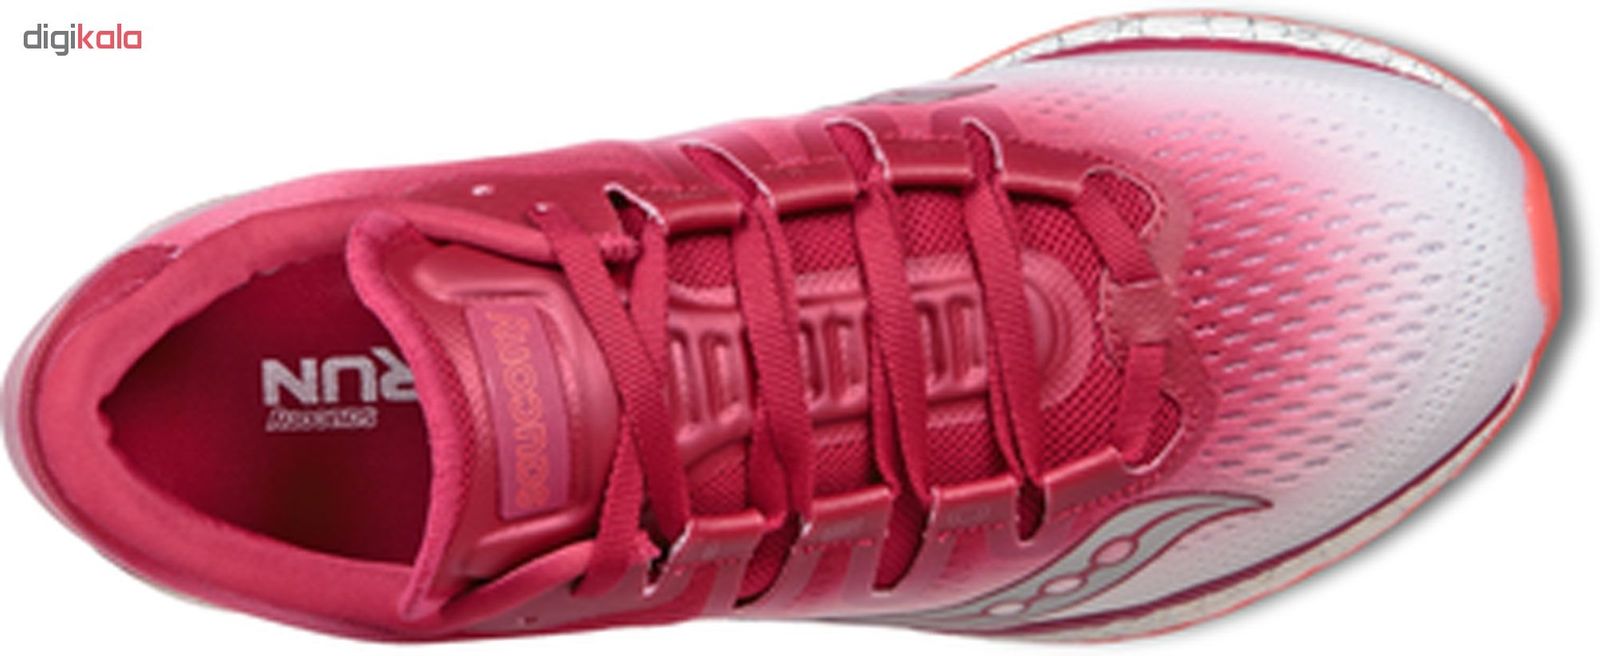 کفش مخصوص دویدن زنانه ساکنی مدل Freedom Iso کد S10355-5 -  - 4